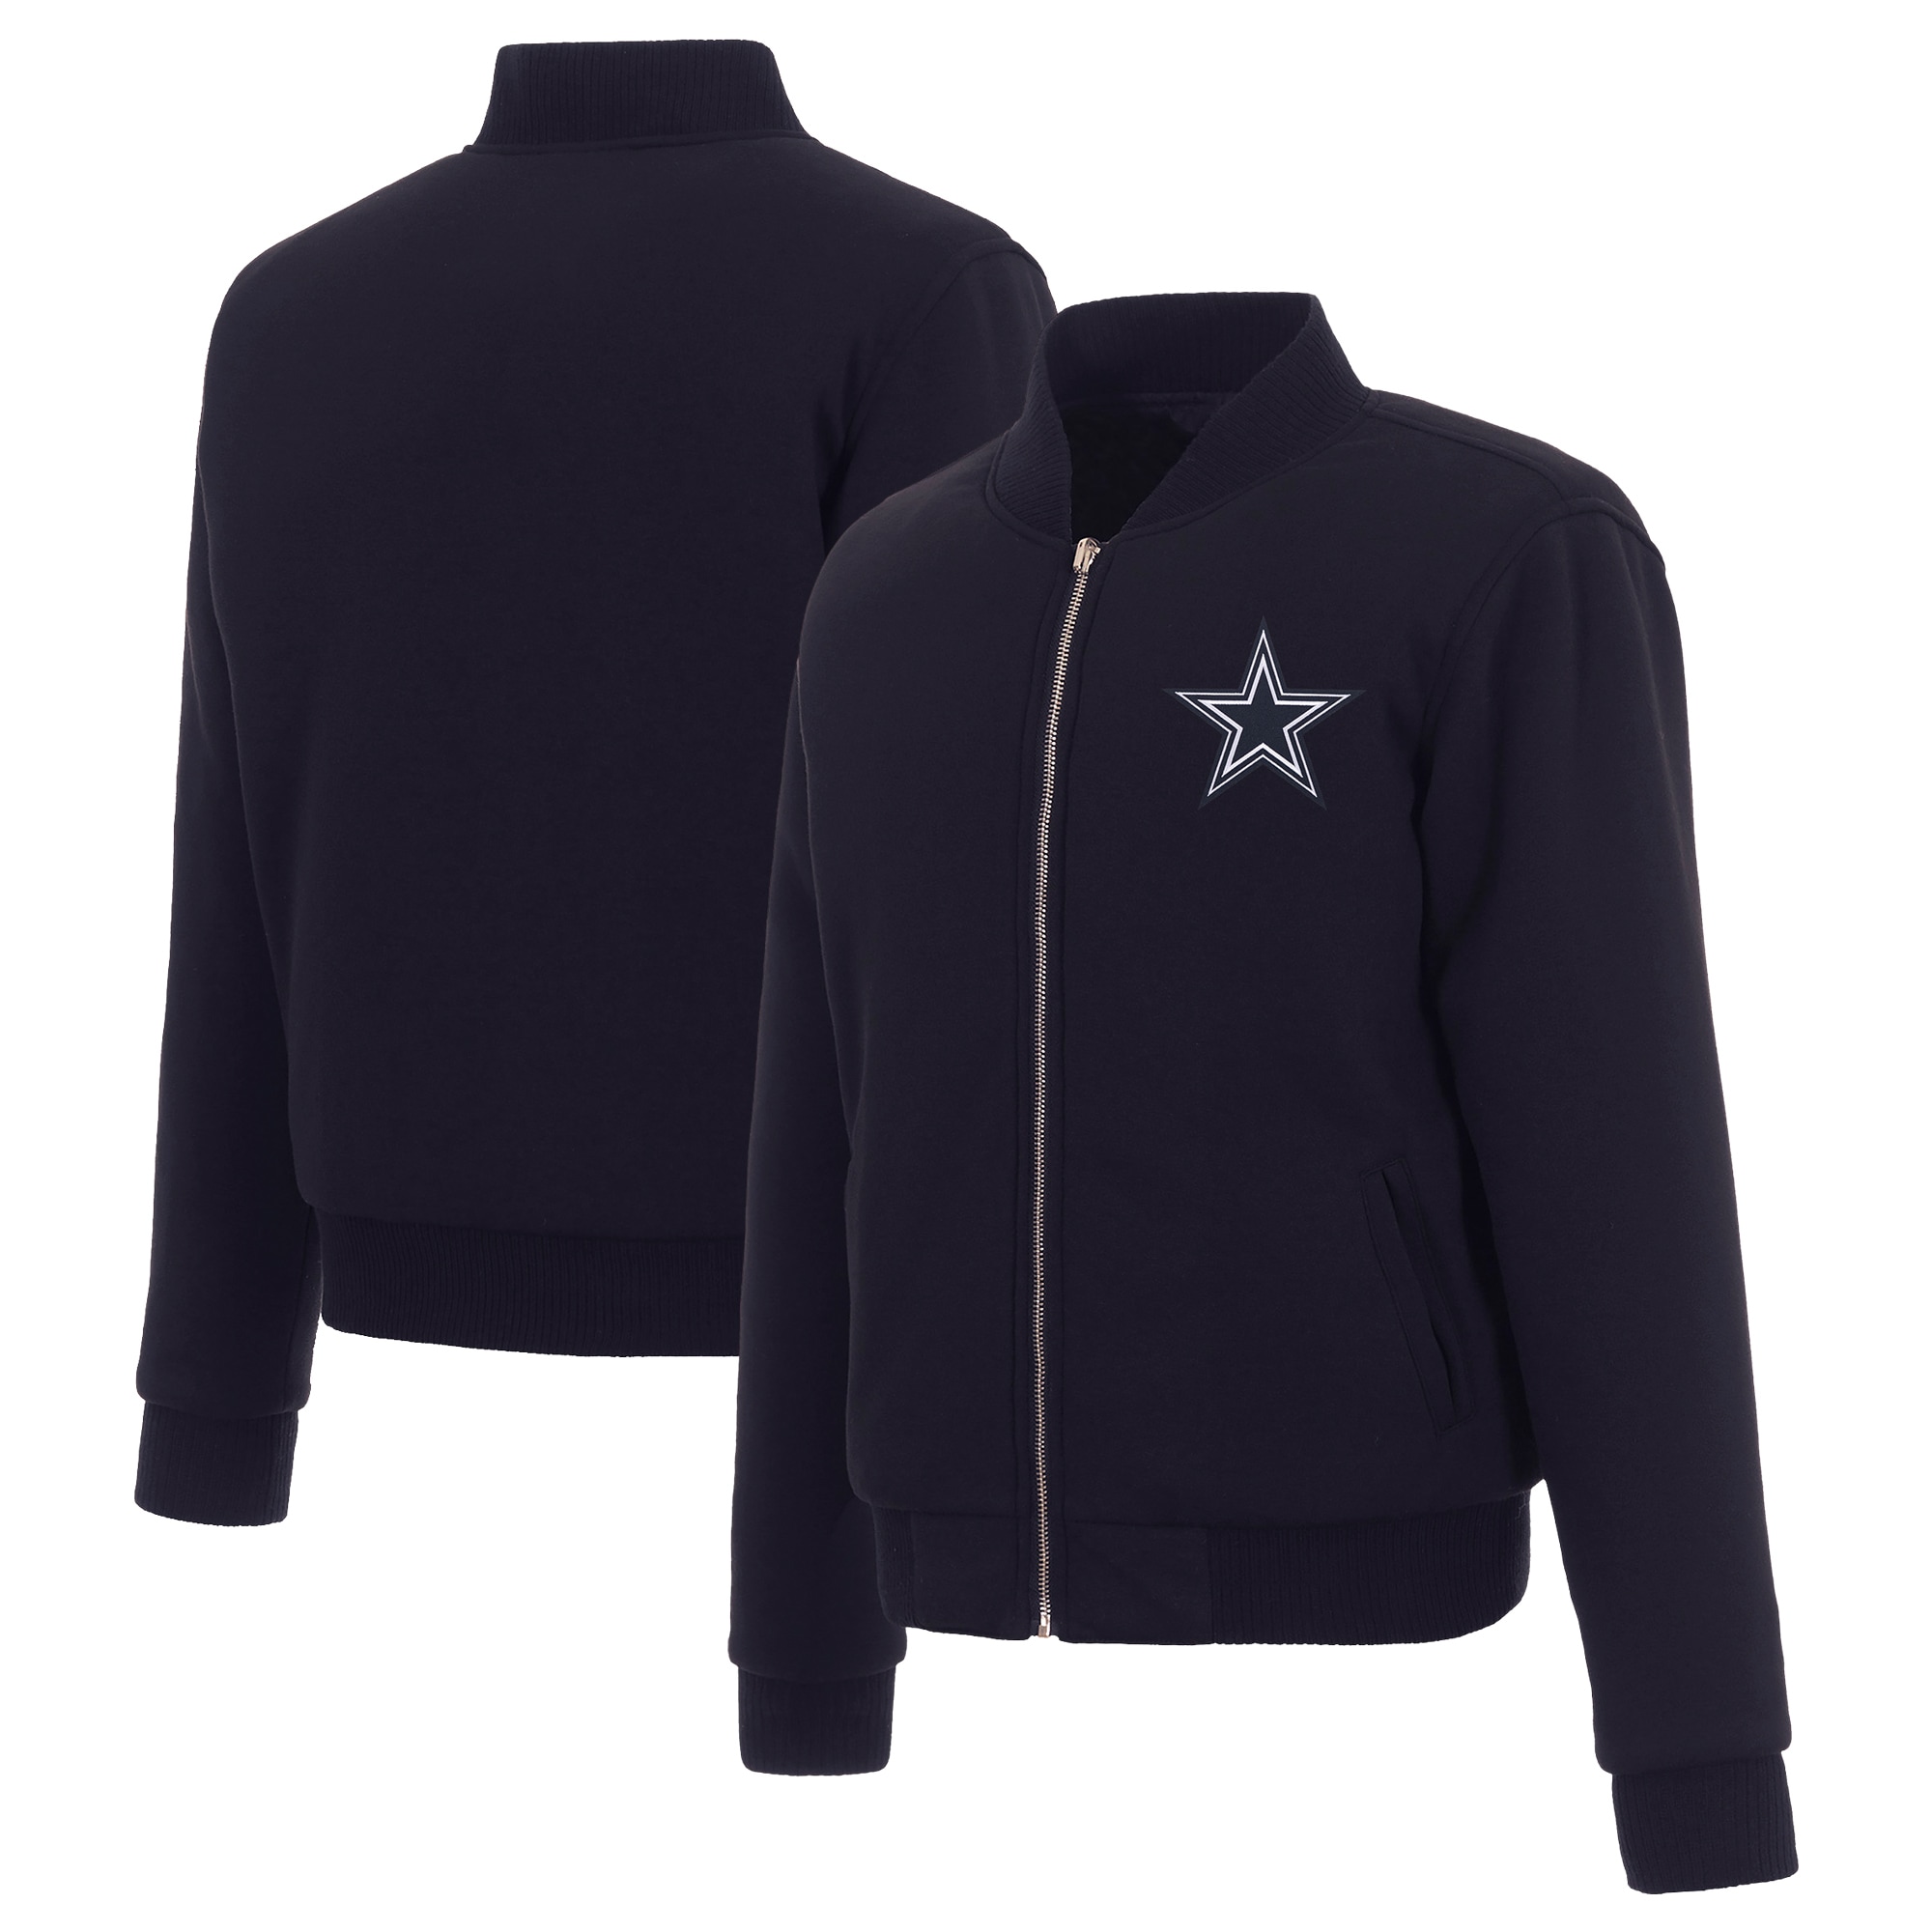 Women's JH Design Navy Dallas Cowboys Reversible Fleece Full-Zip Jacket - image 1 of 5